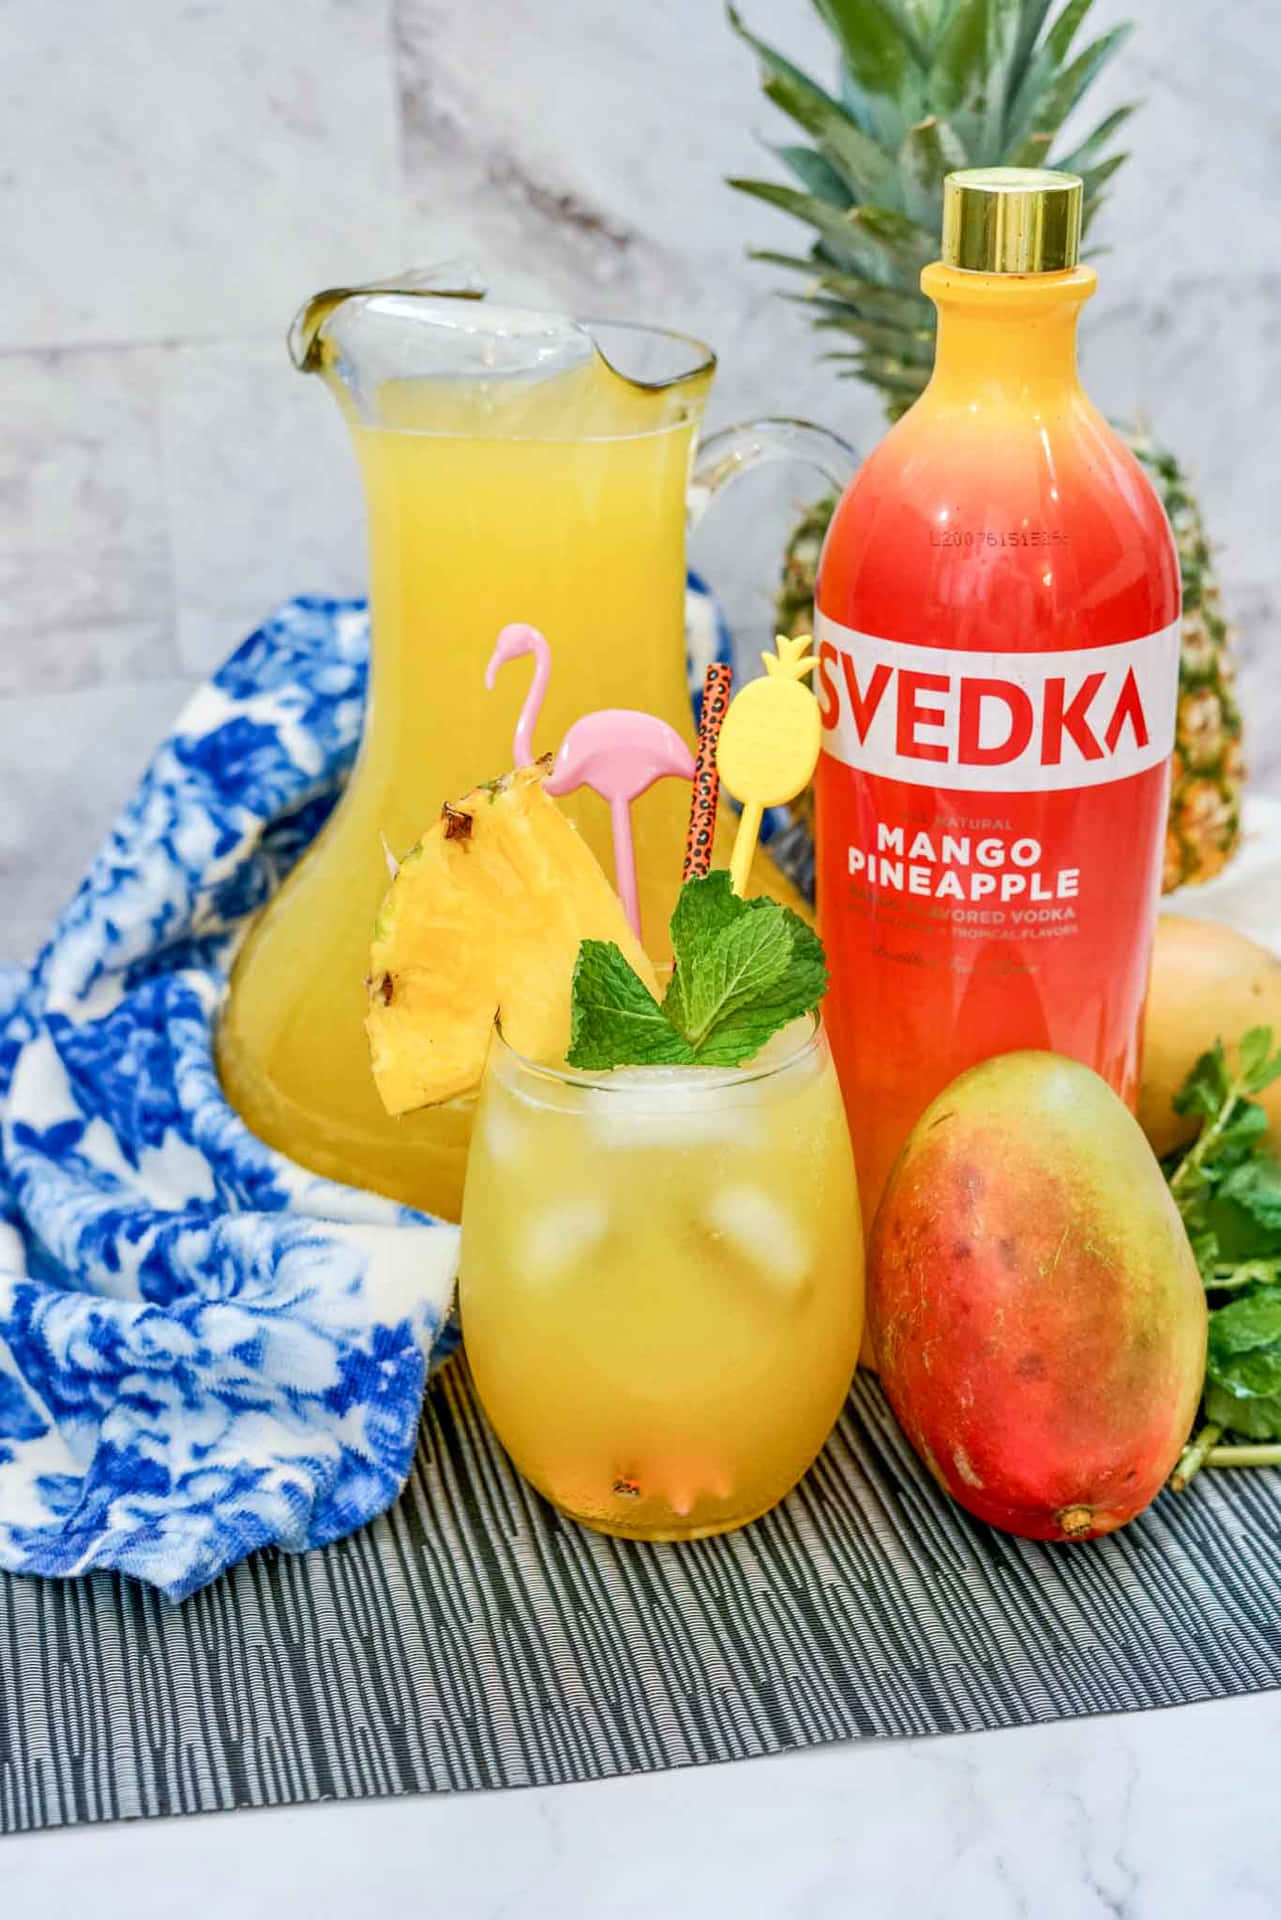 Svedka Mango Pineapple Flavored Vodka Wallpaper